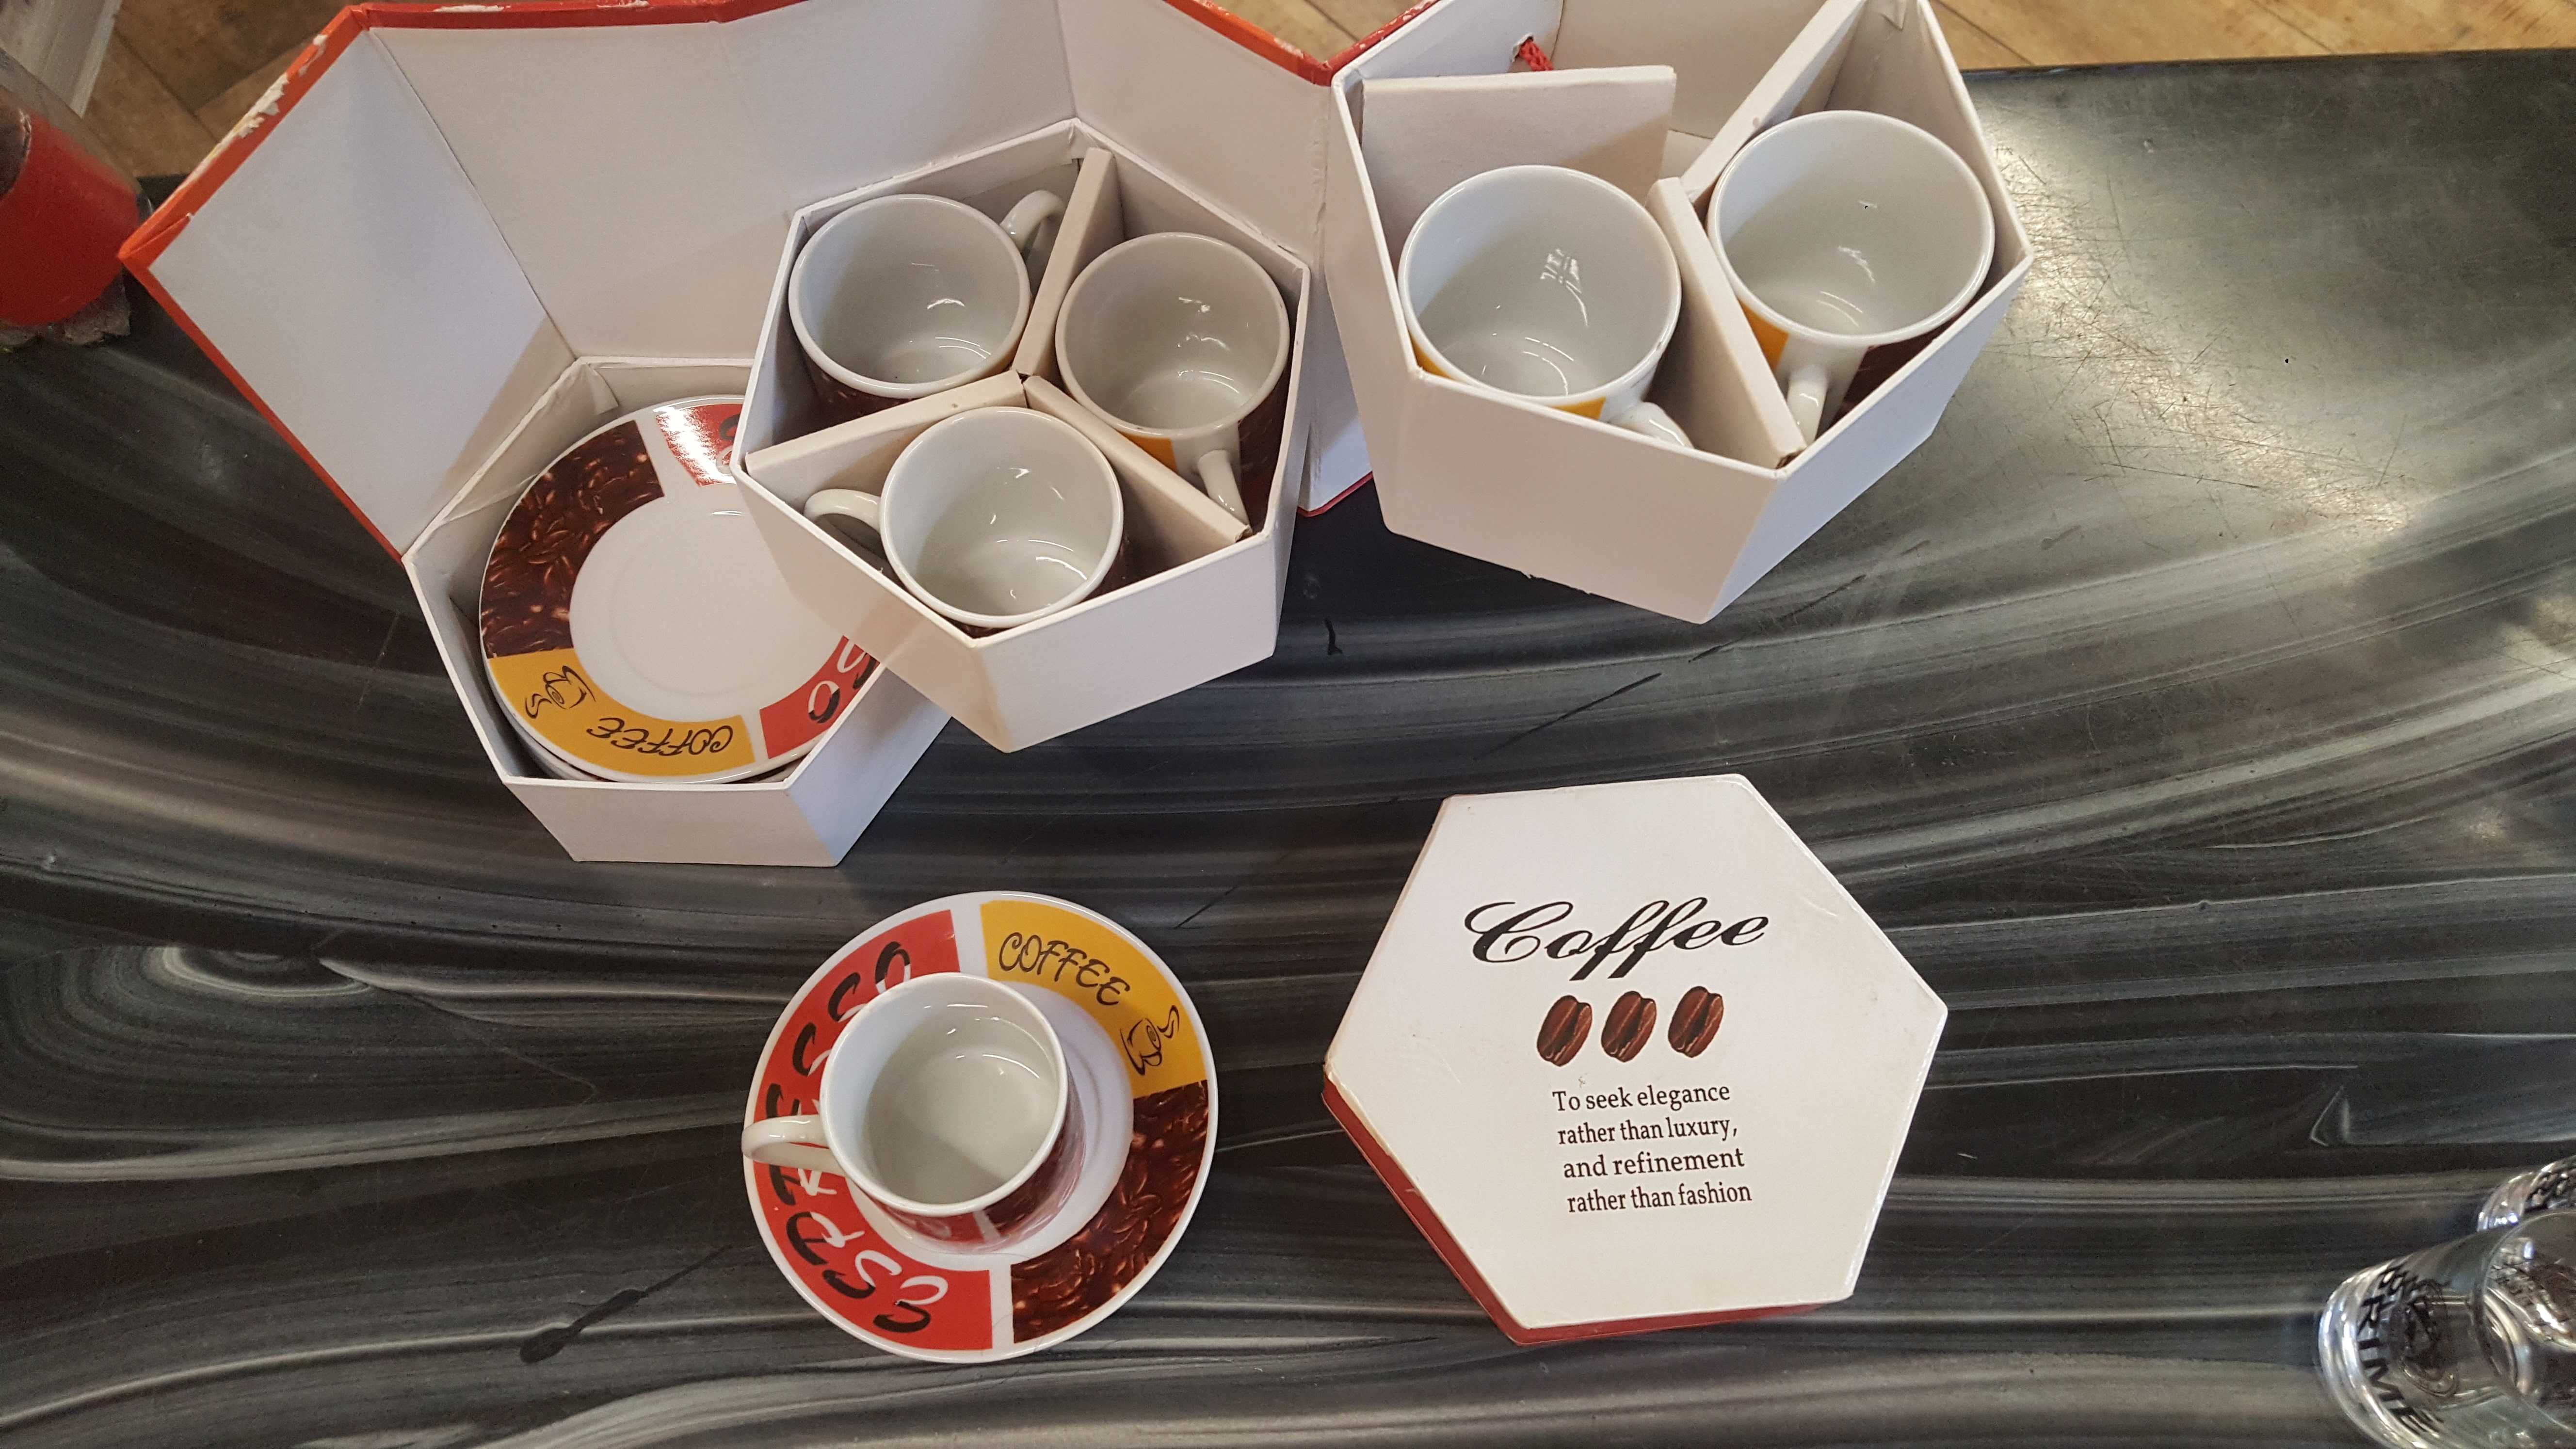 Набор кофейных чашек